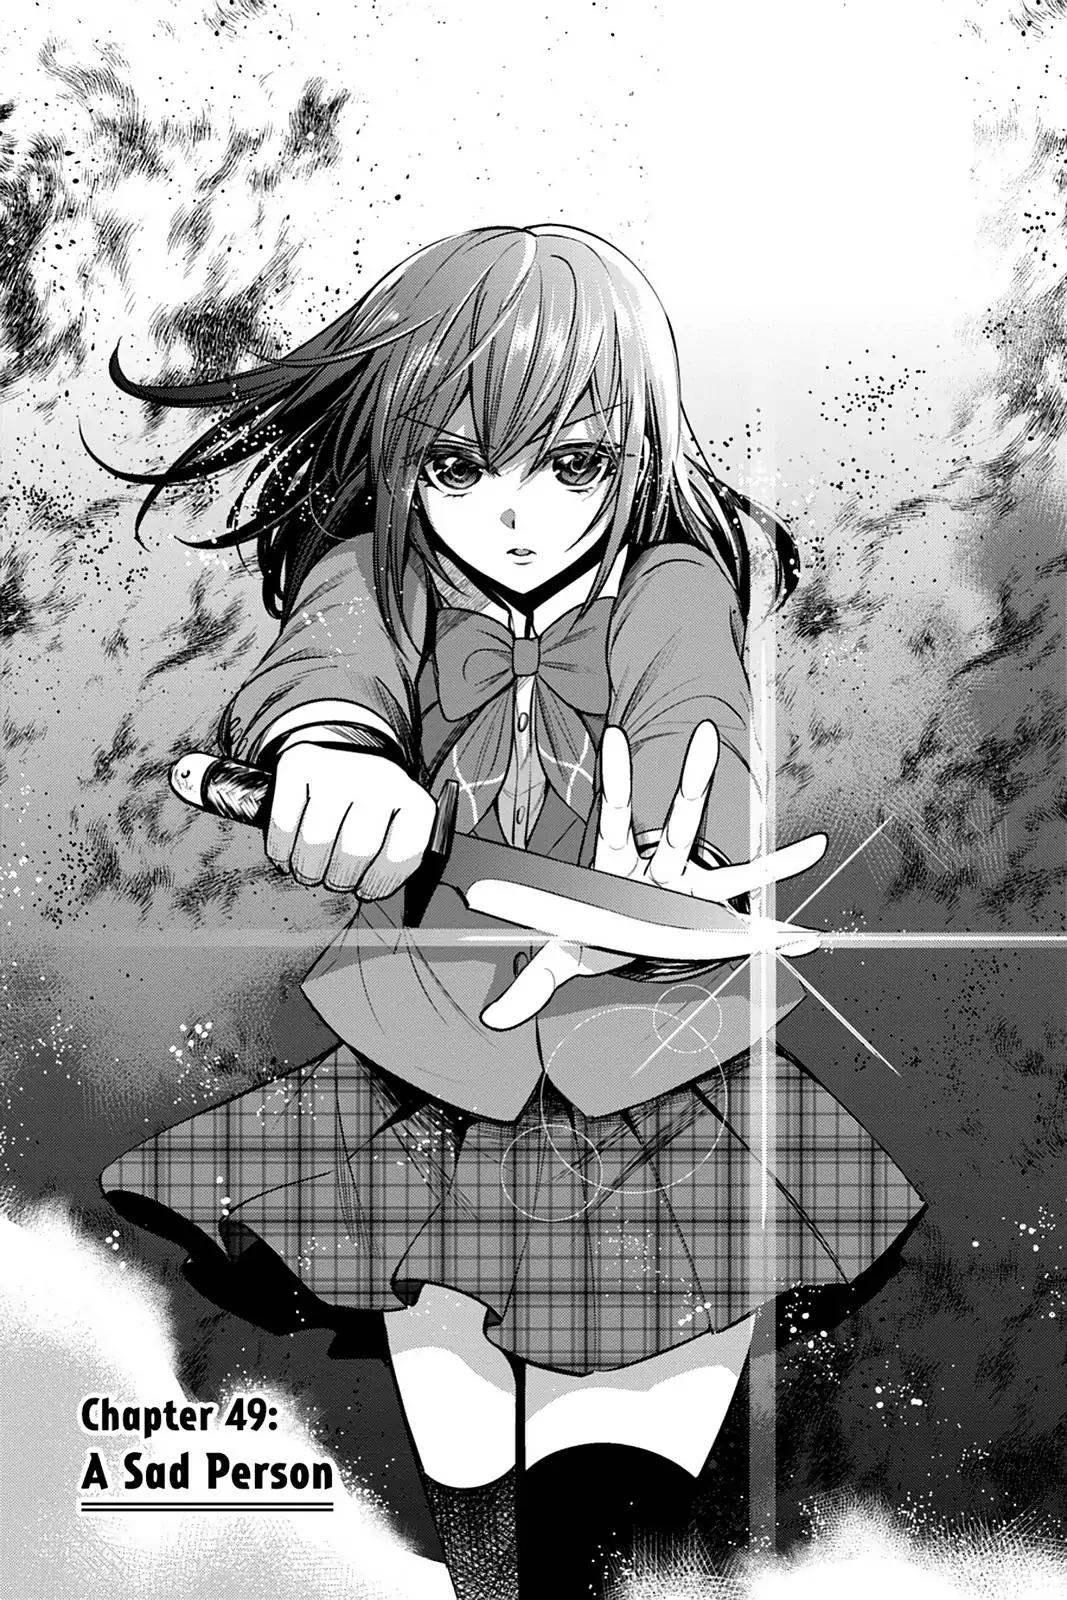 Strike the Blood  Manga 